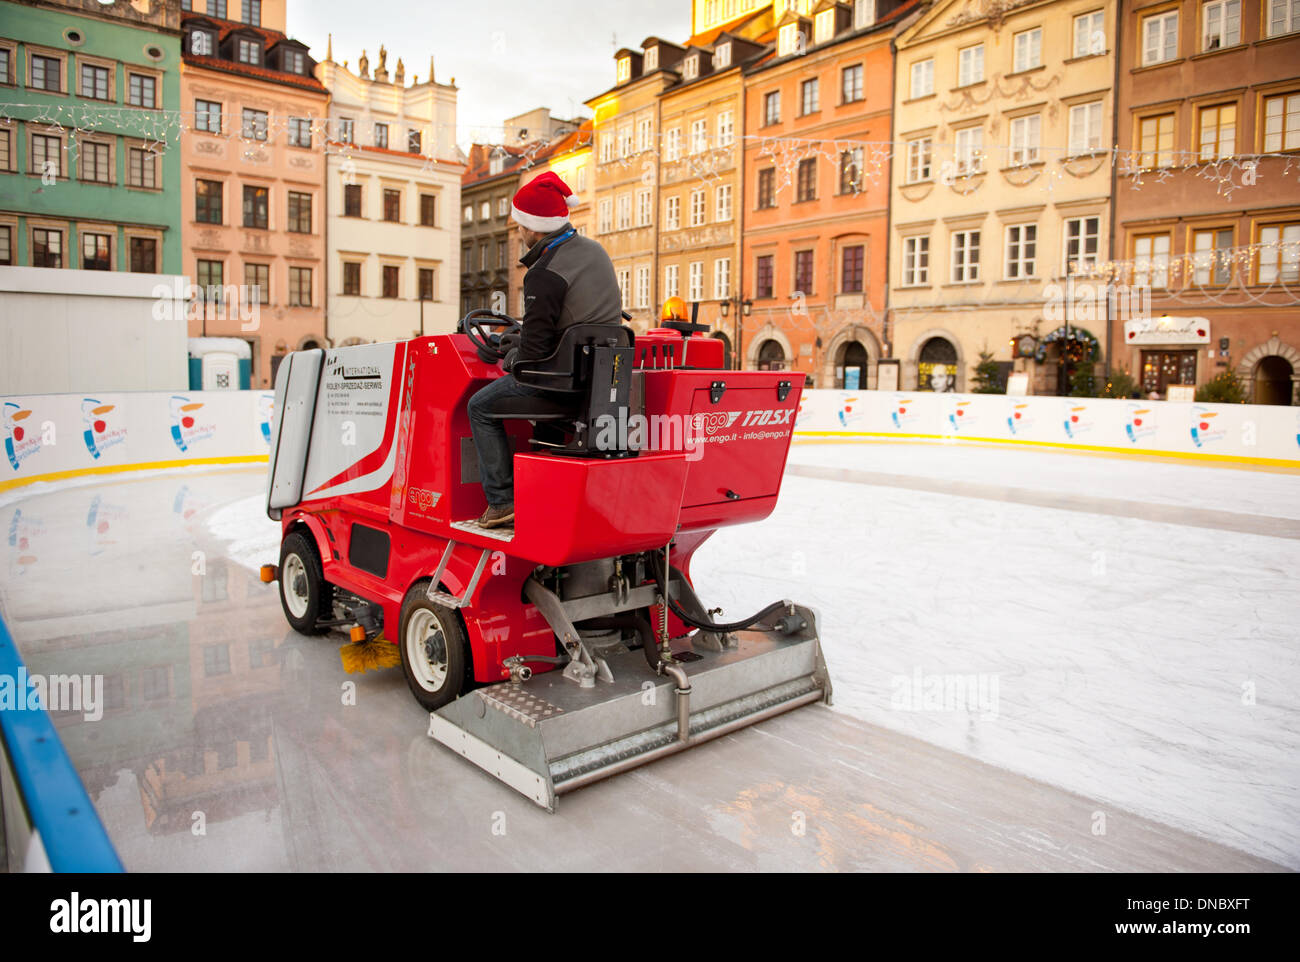 Uomo sulla macchina rossa anche pista di pattinaggio su ghiaccio nella Città Vecchia Foto Stock